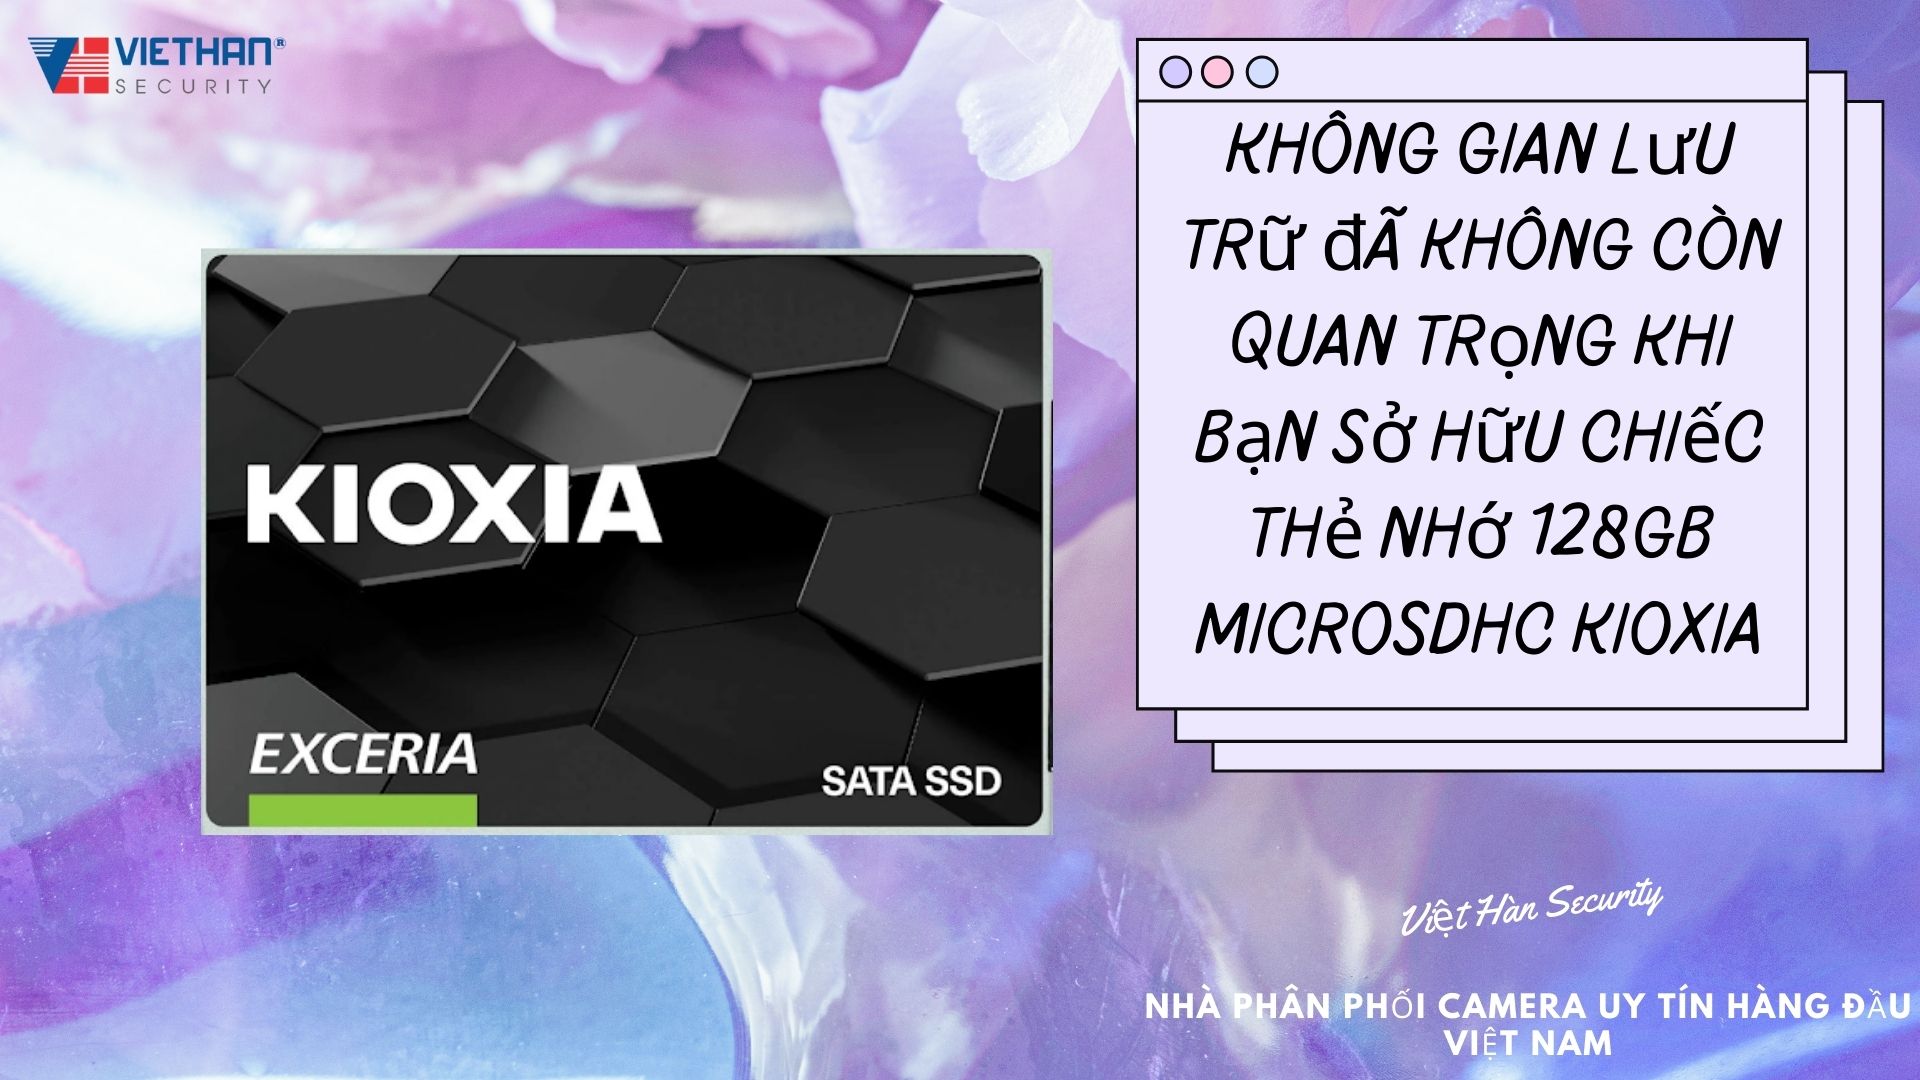  thẻ nhớ 128GB MicroSDHC Kioxia